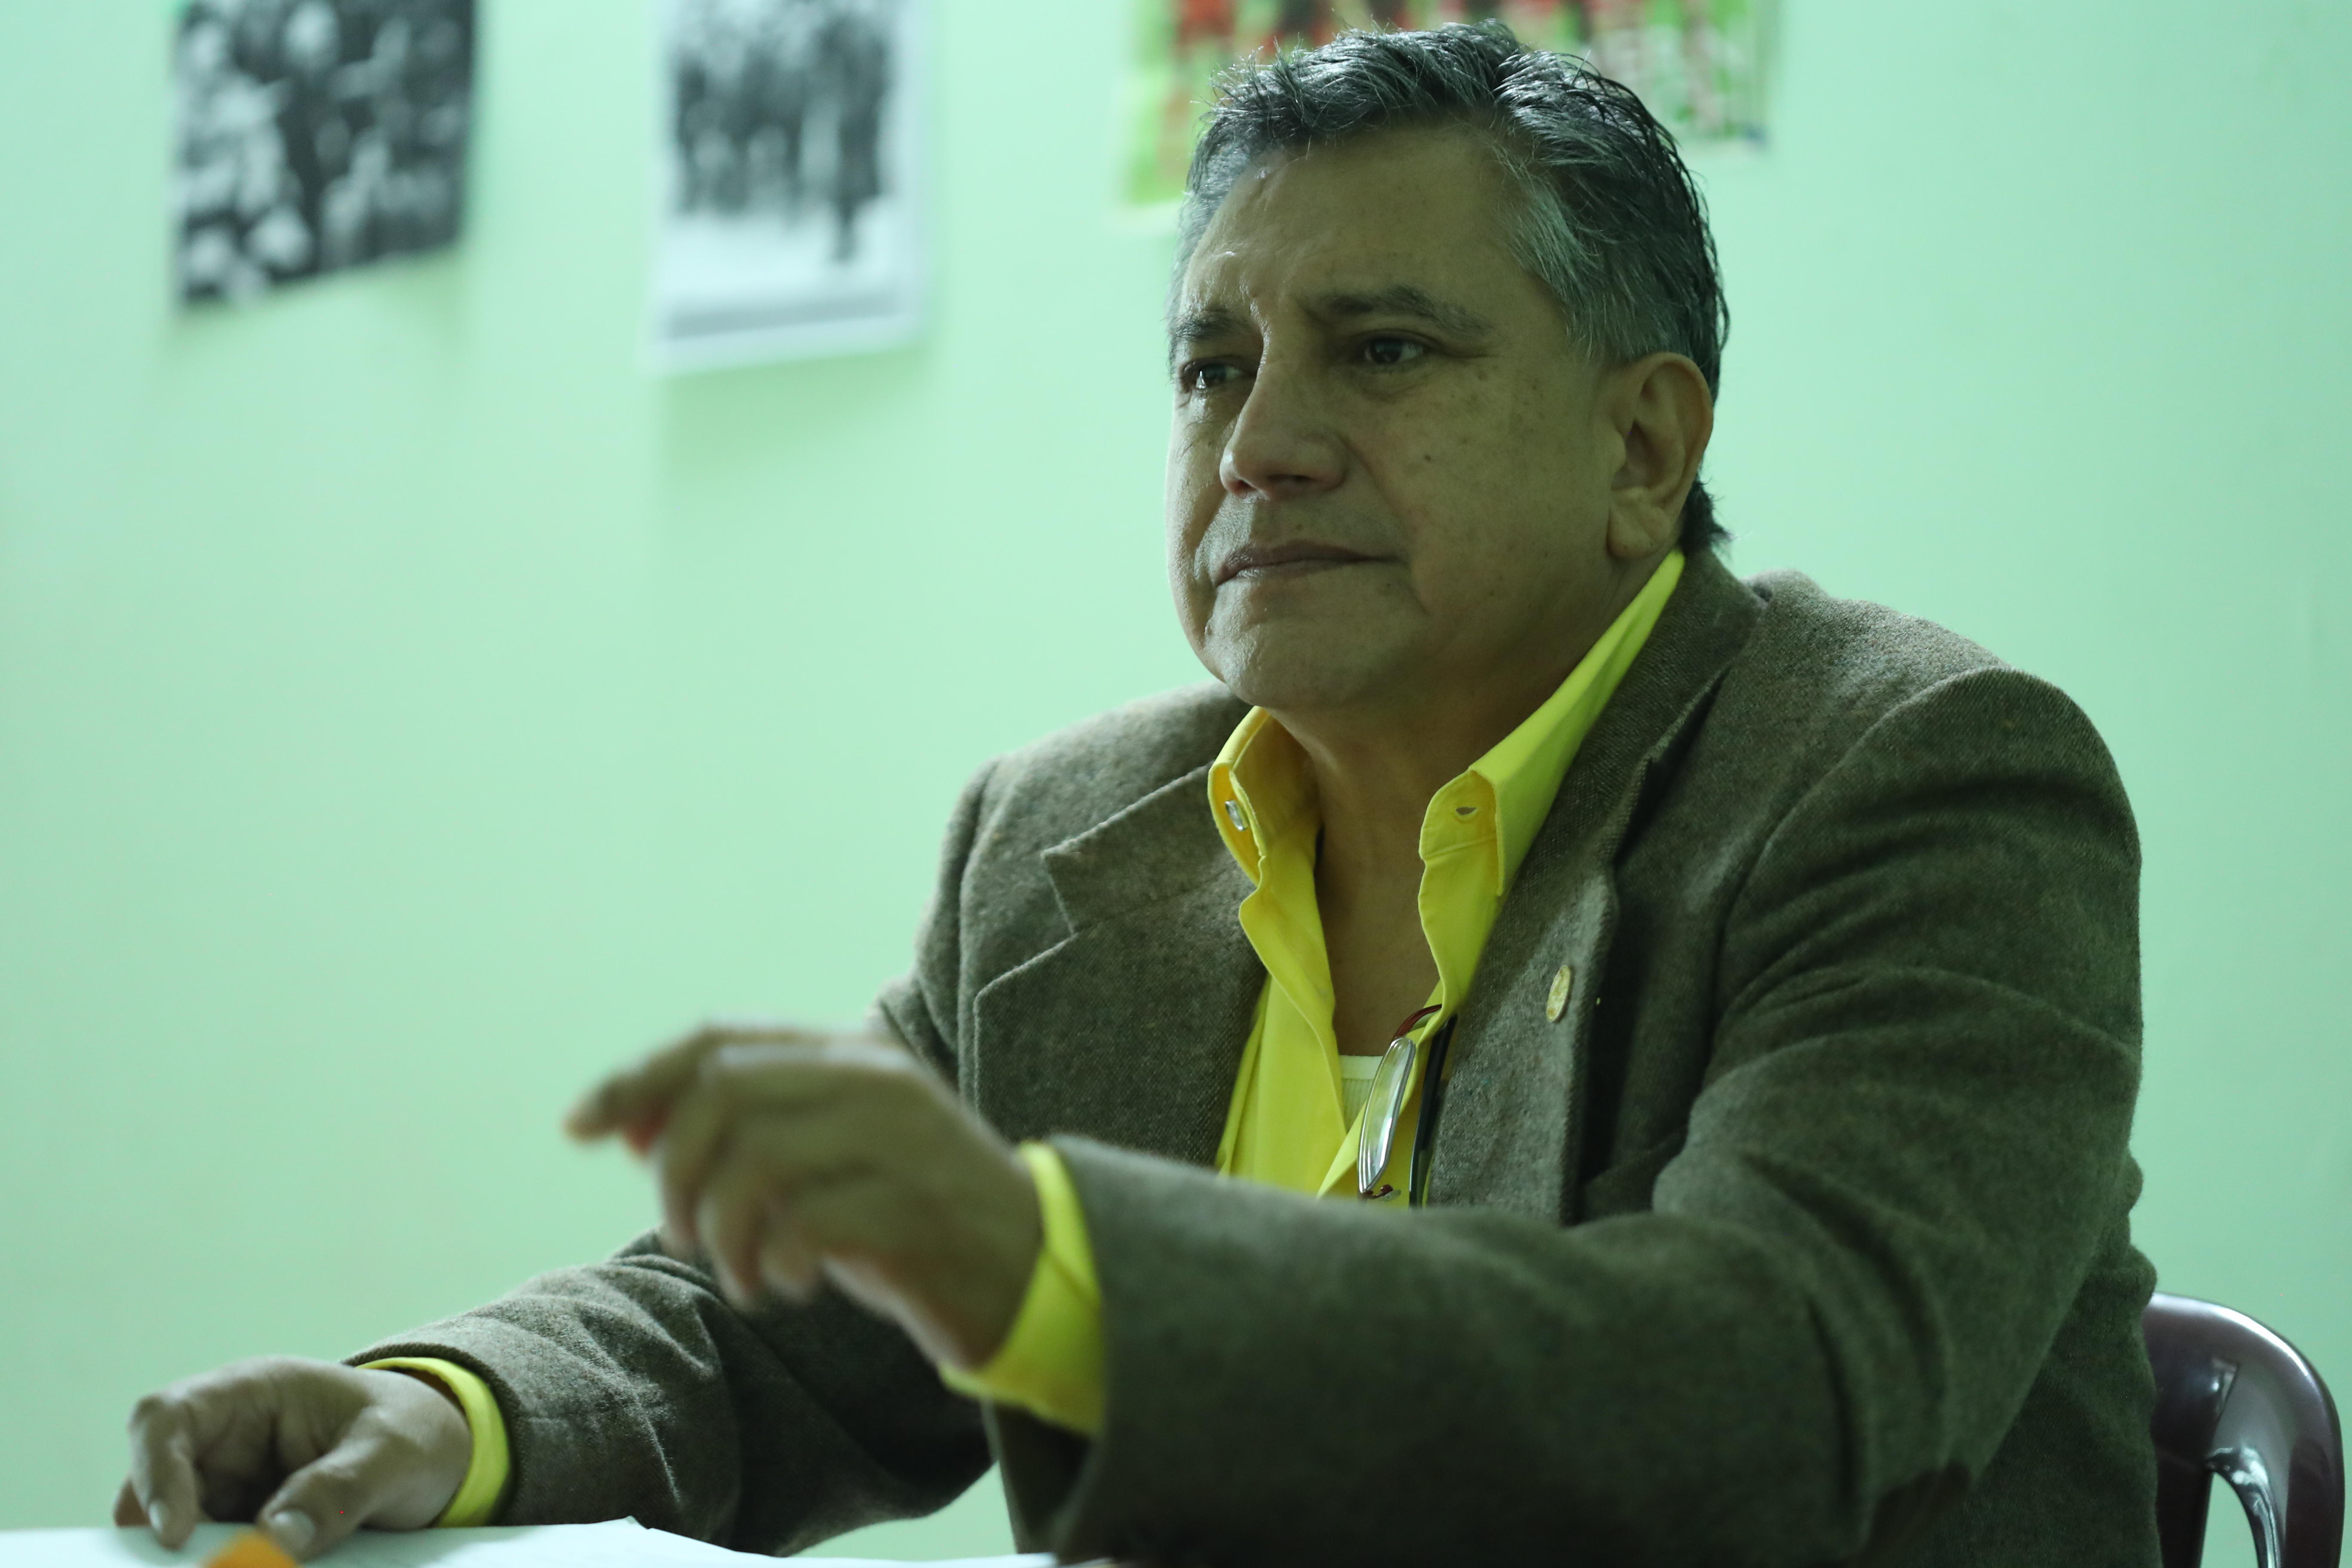 Sergio Reyes, exdirector del área de salud de Suchitepéquez, señala incumplimiento legal del ministro Carlos Soto. (Foto Prensa Libre: Esbin García)